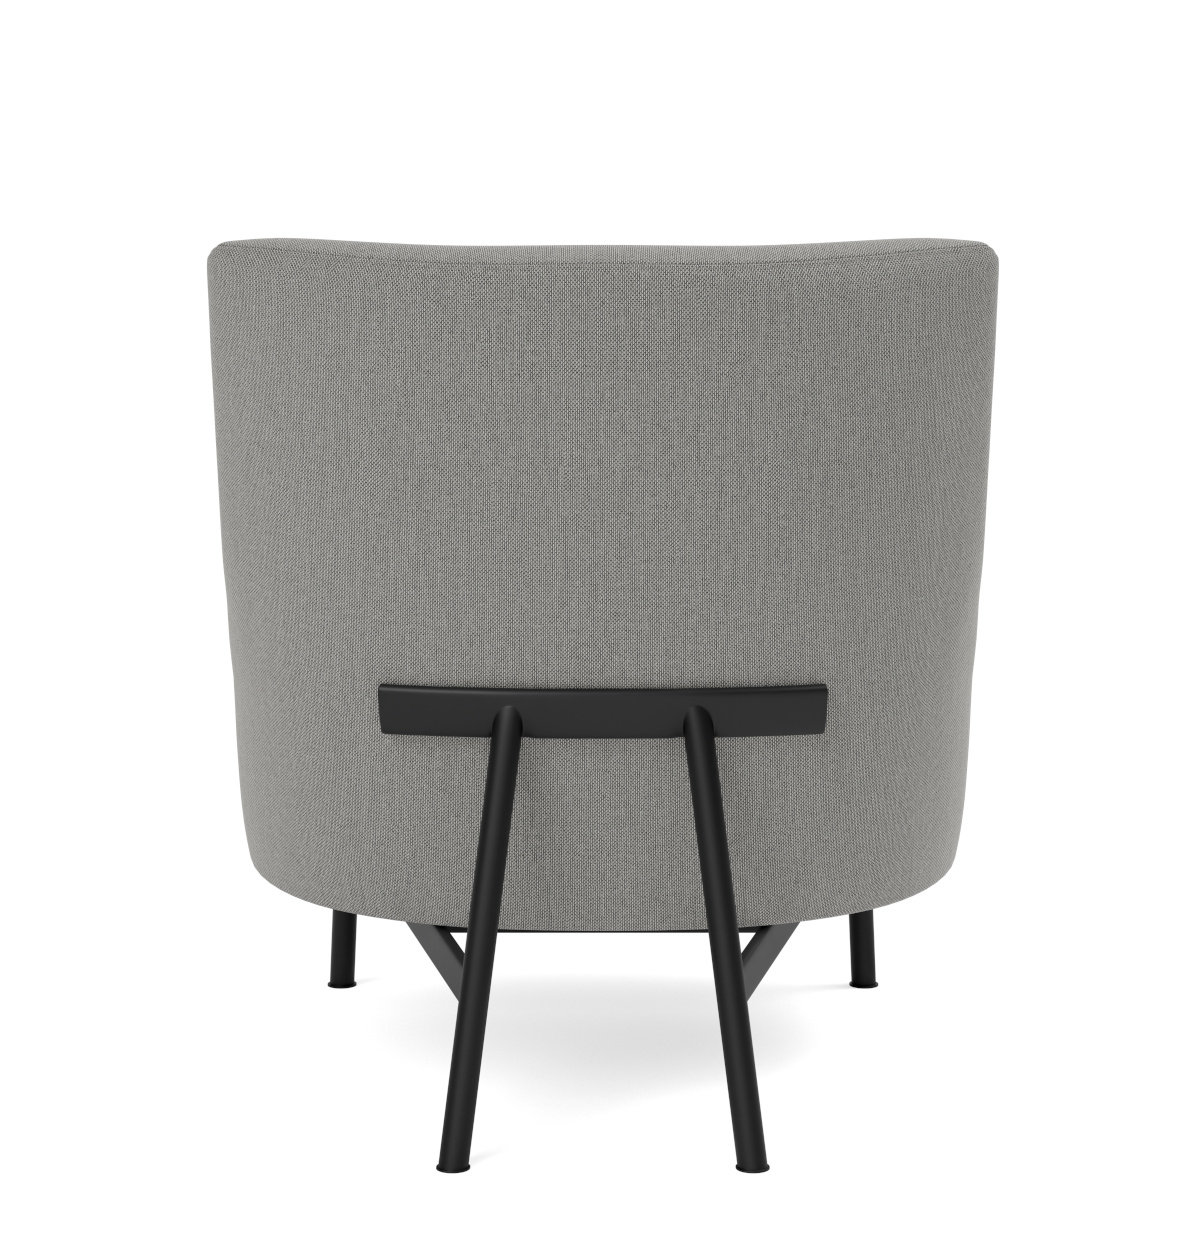 A-Chair Metal Base, schwarz / re-wool 128